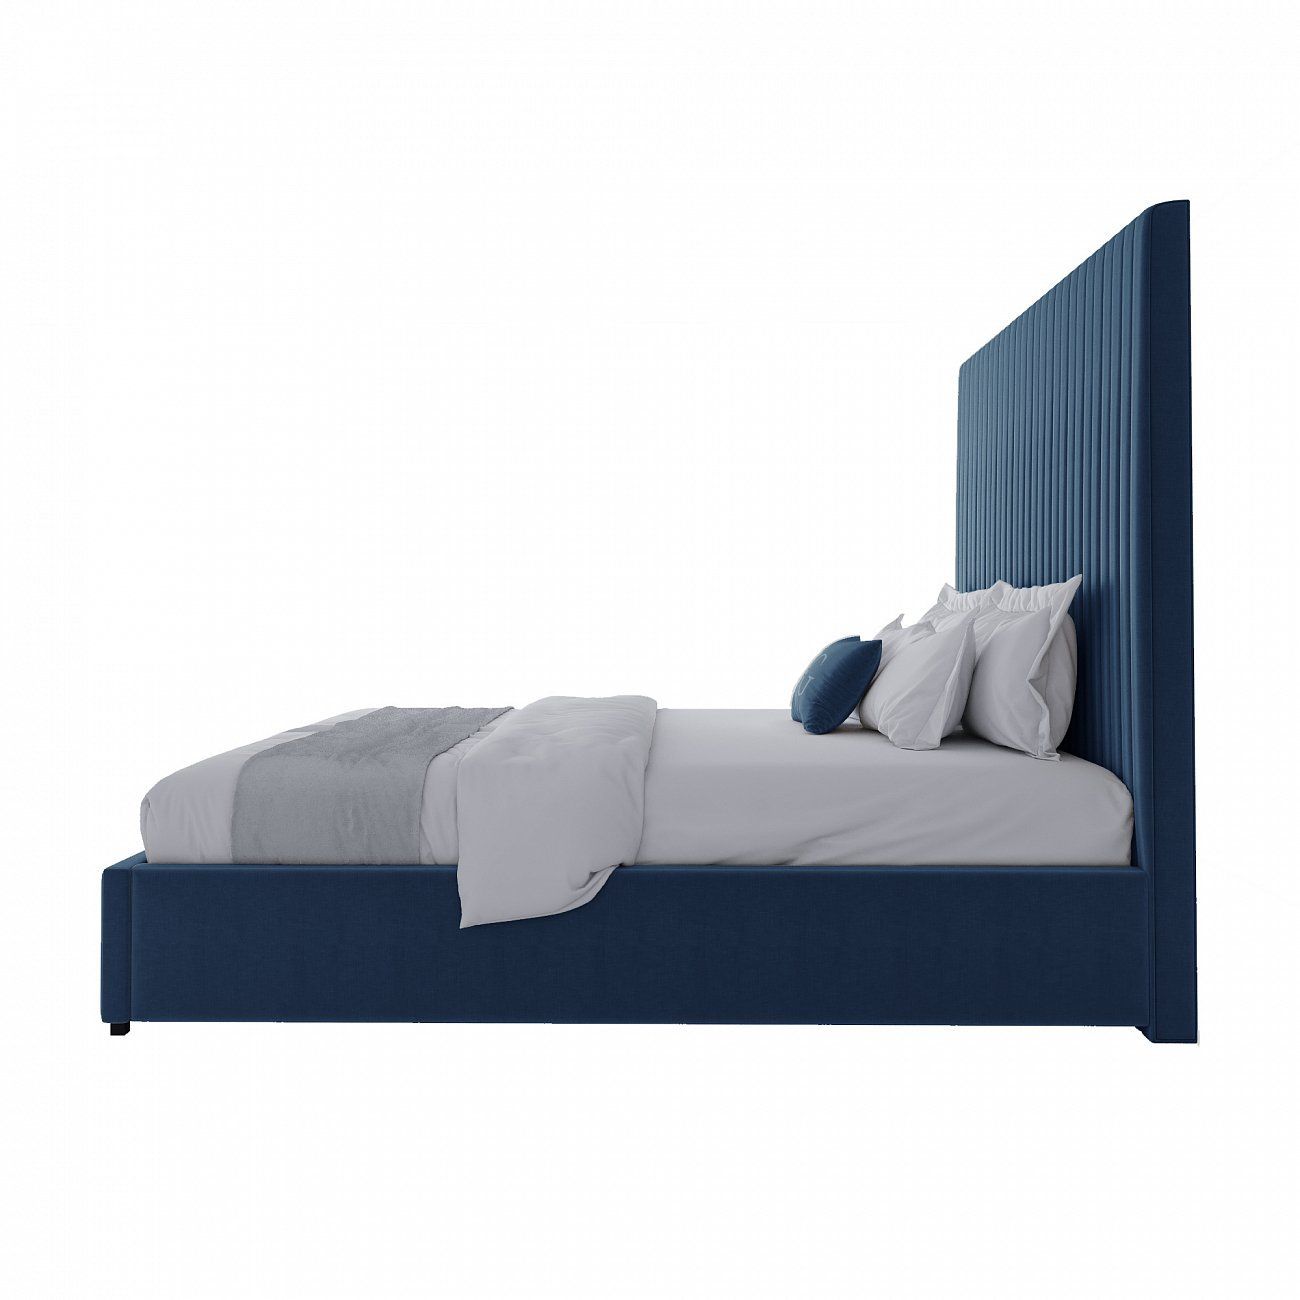 Double bed 180x200 cm blue Mora